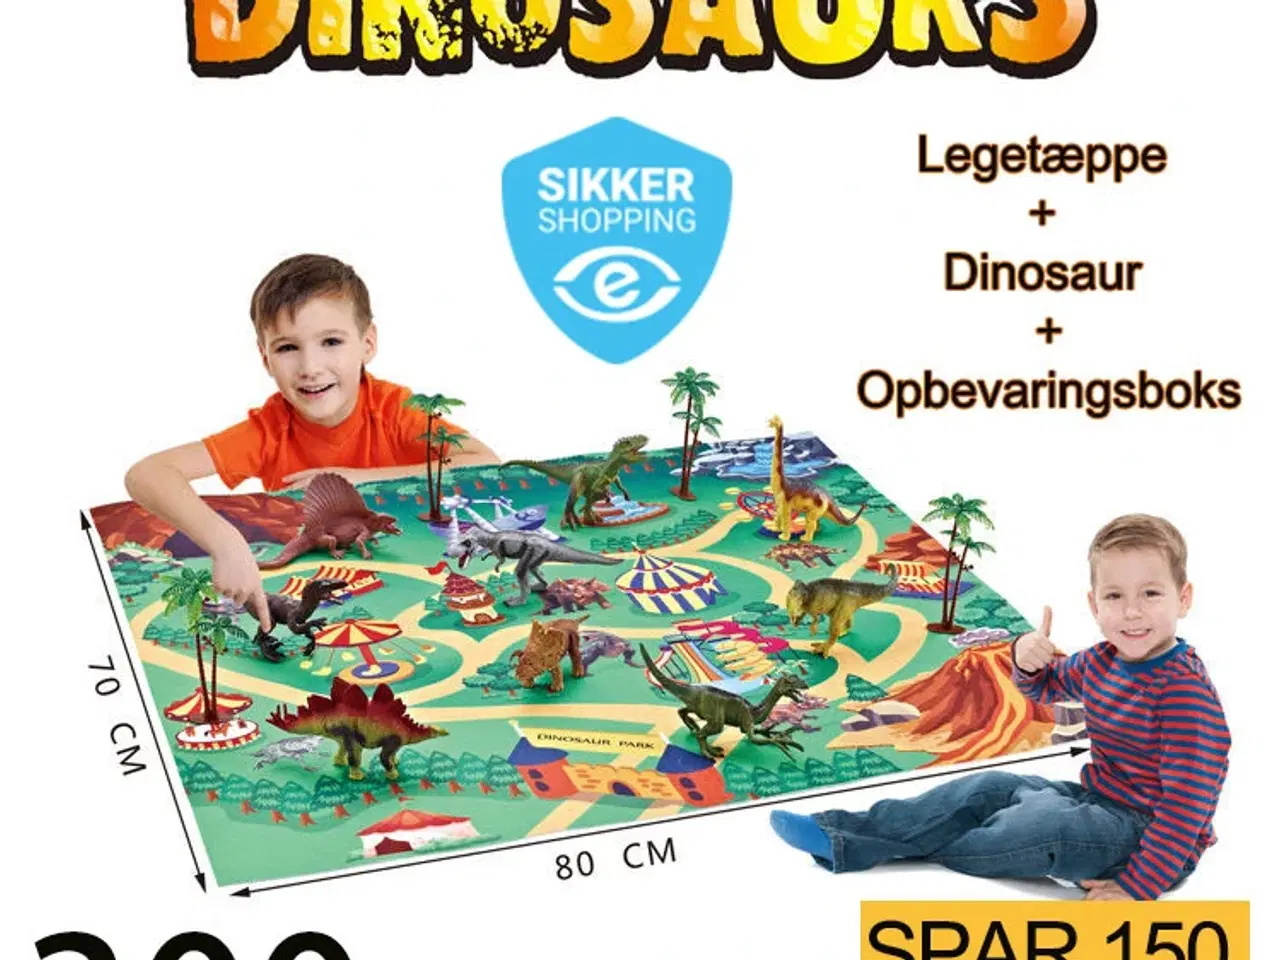 Billede 1 - Dinosaur-tema legetæppe med opbevaringsboks